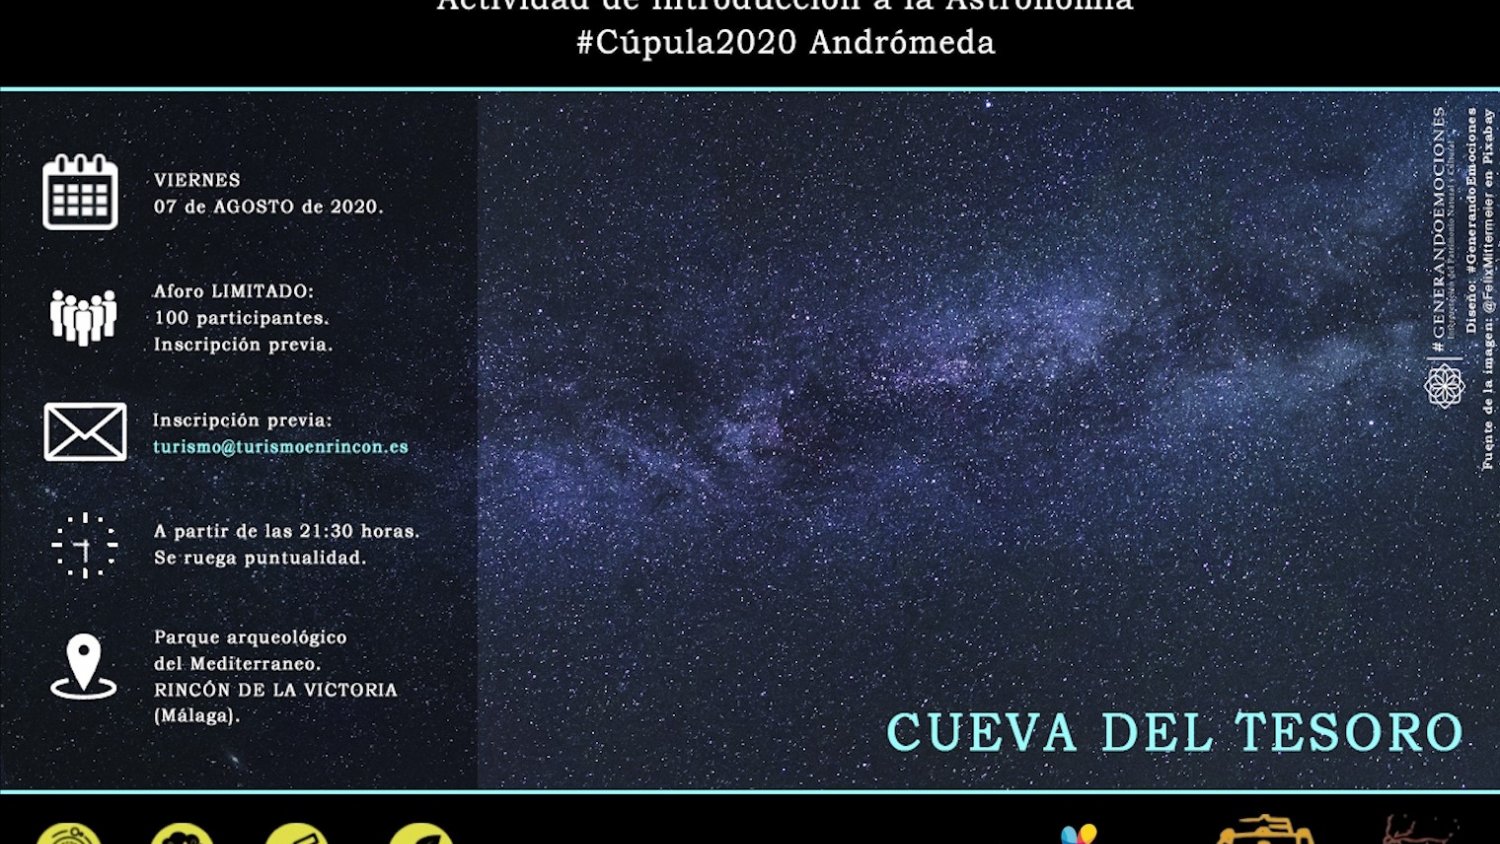 El Parque Arqueológico de Rincón de la Victoria acoge una actividad astronómica para ver las estrellas